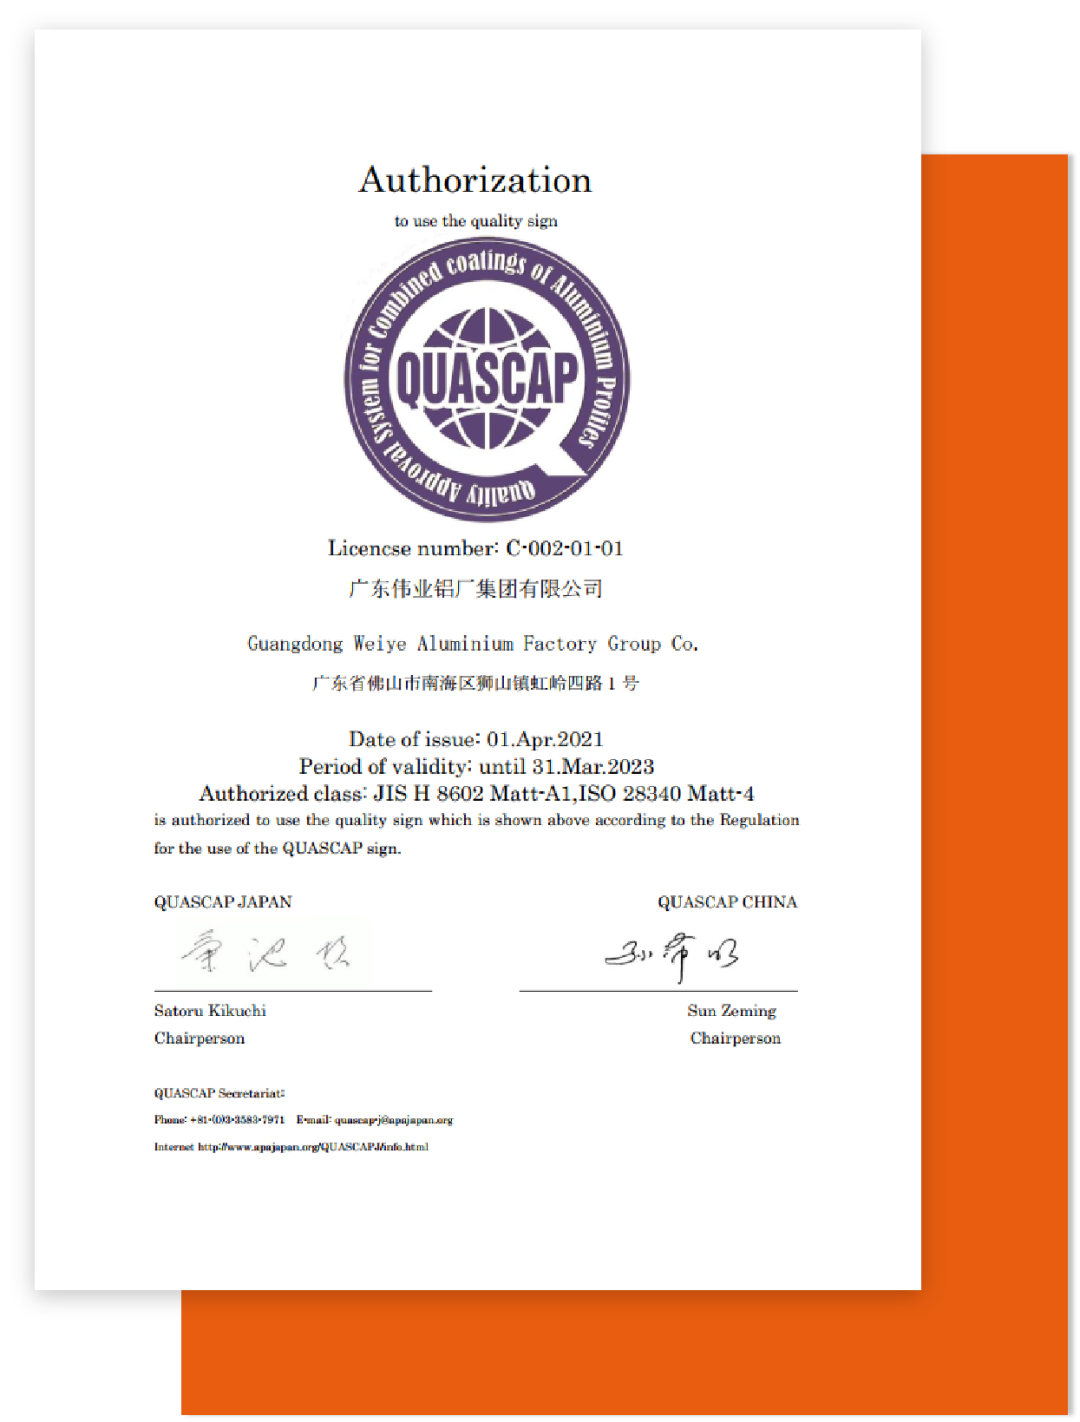 伟业消光电泳产品通过QUASCAP国际认证